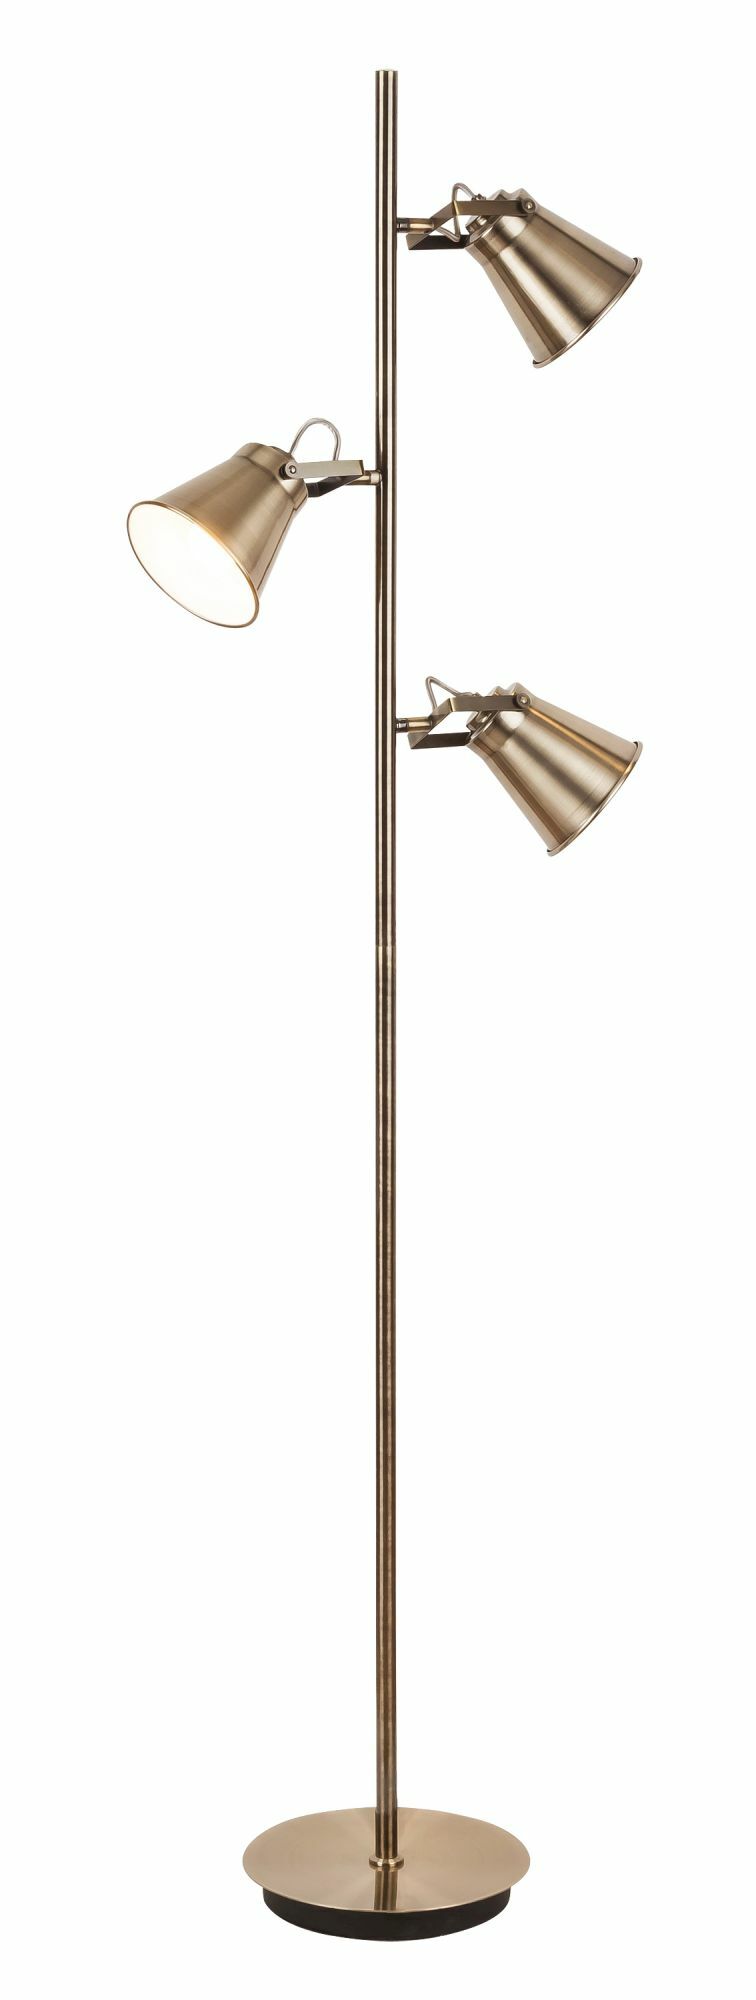 Stojanová lampa Martina 4194 (bronzová)